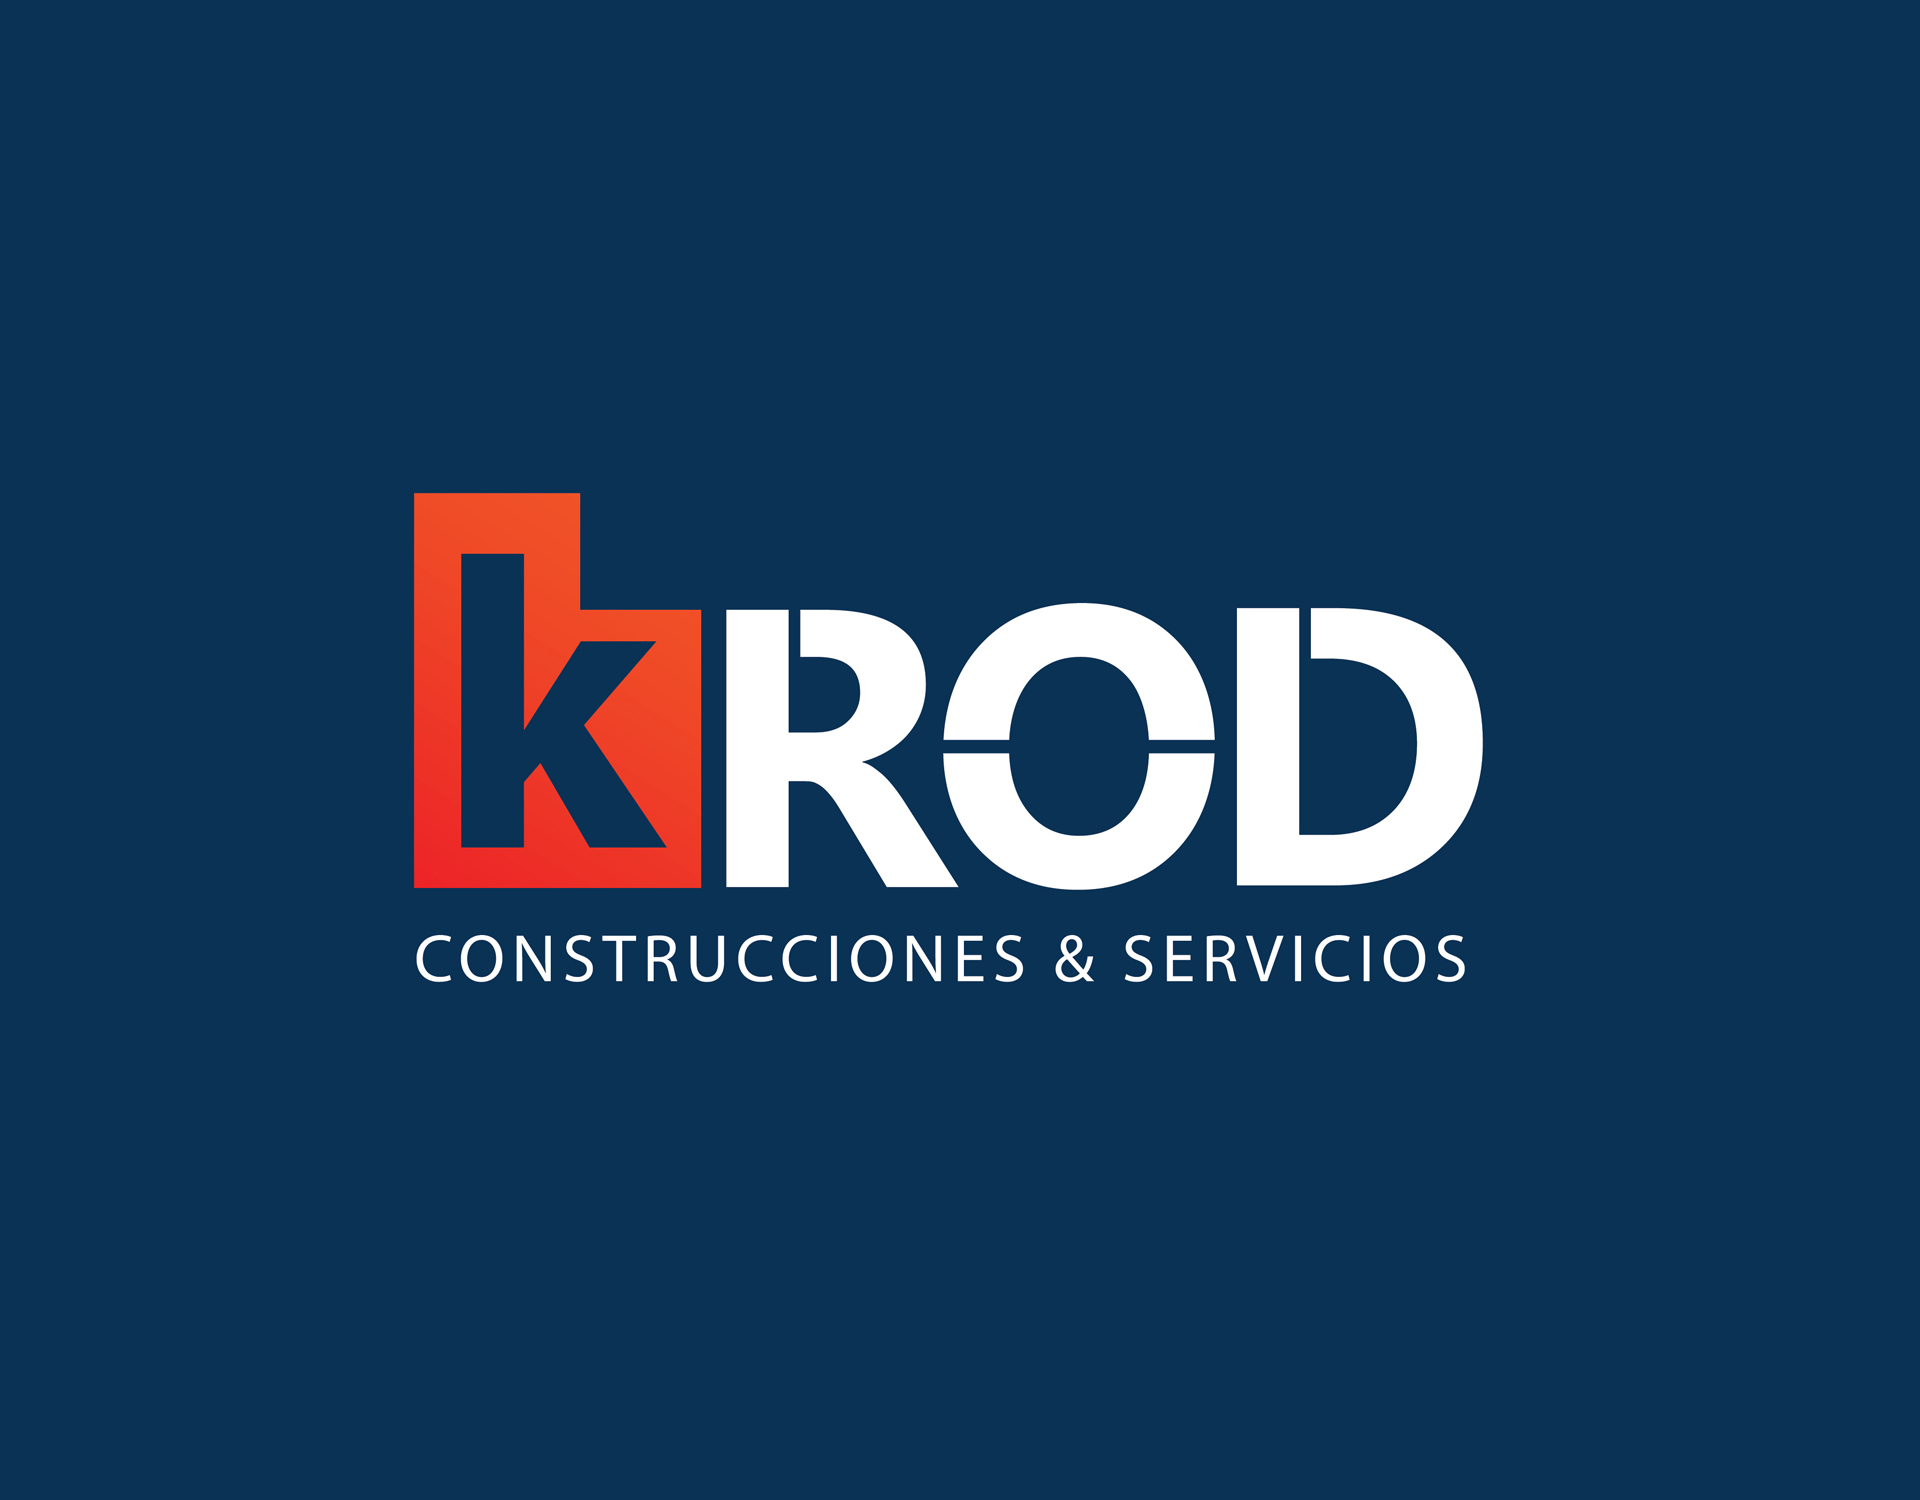 Creación Línea Gráfica constructora KROD | Cliente: KROD